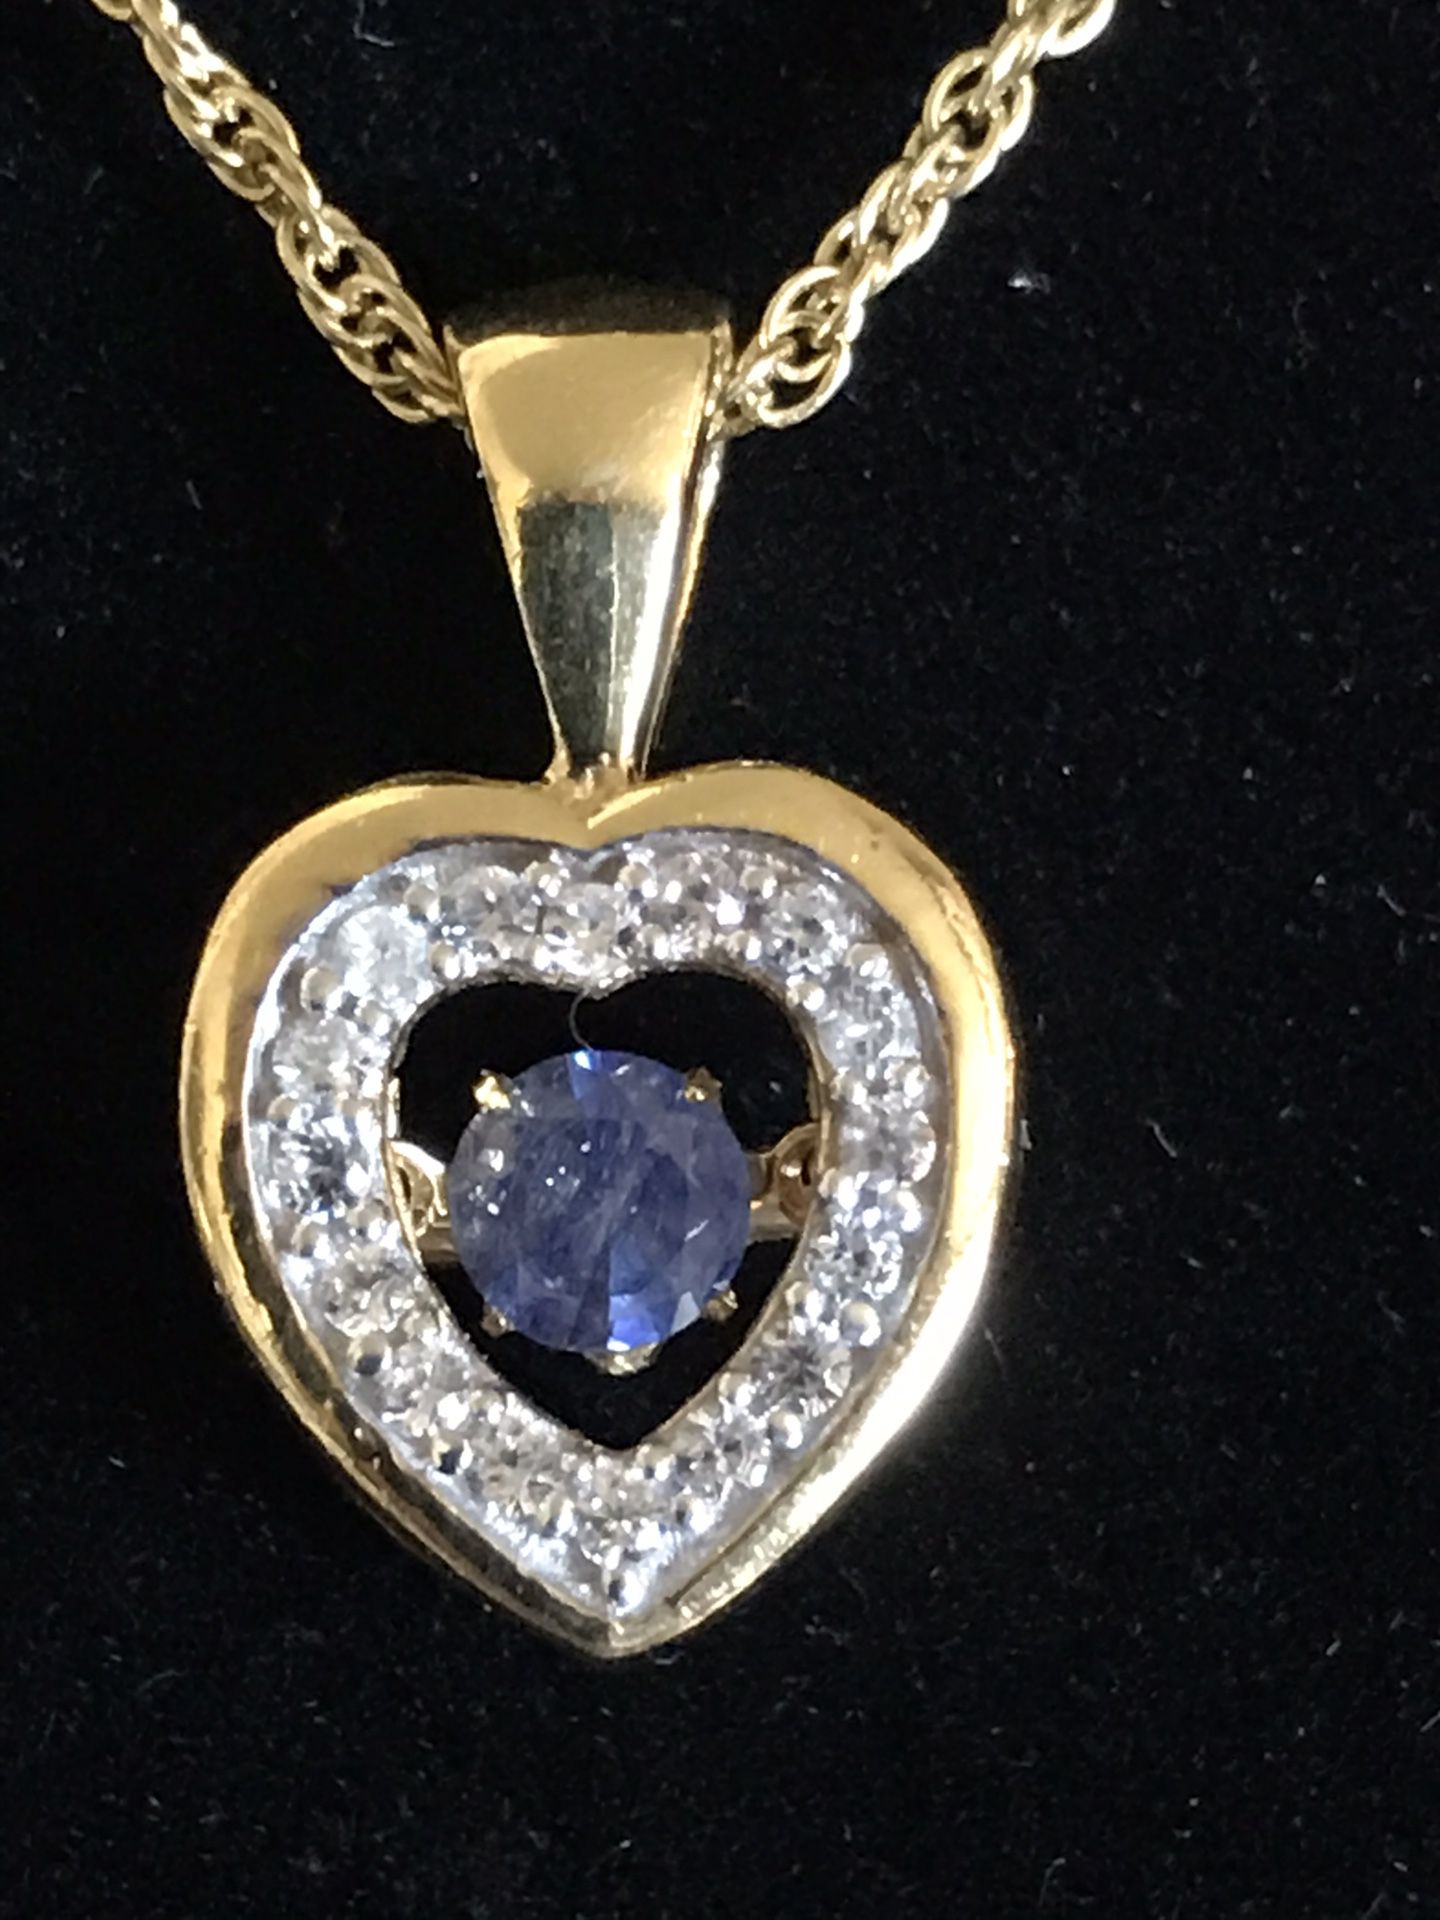 Masoala sapphire beating heart pendant